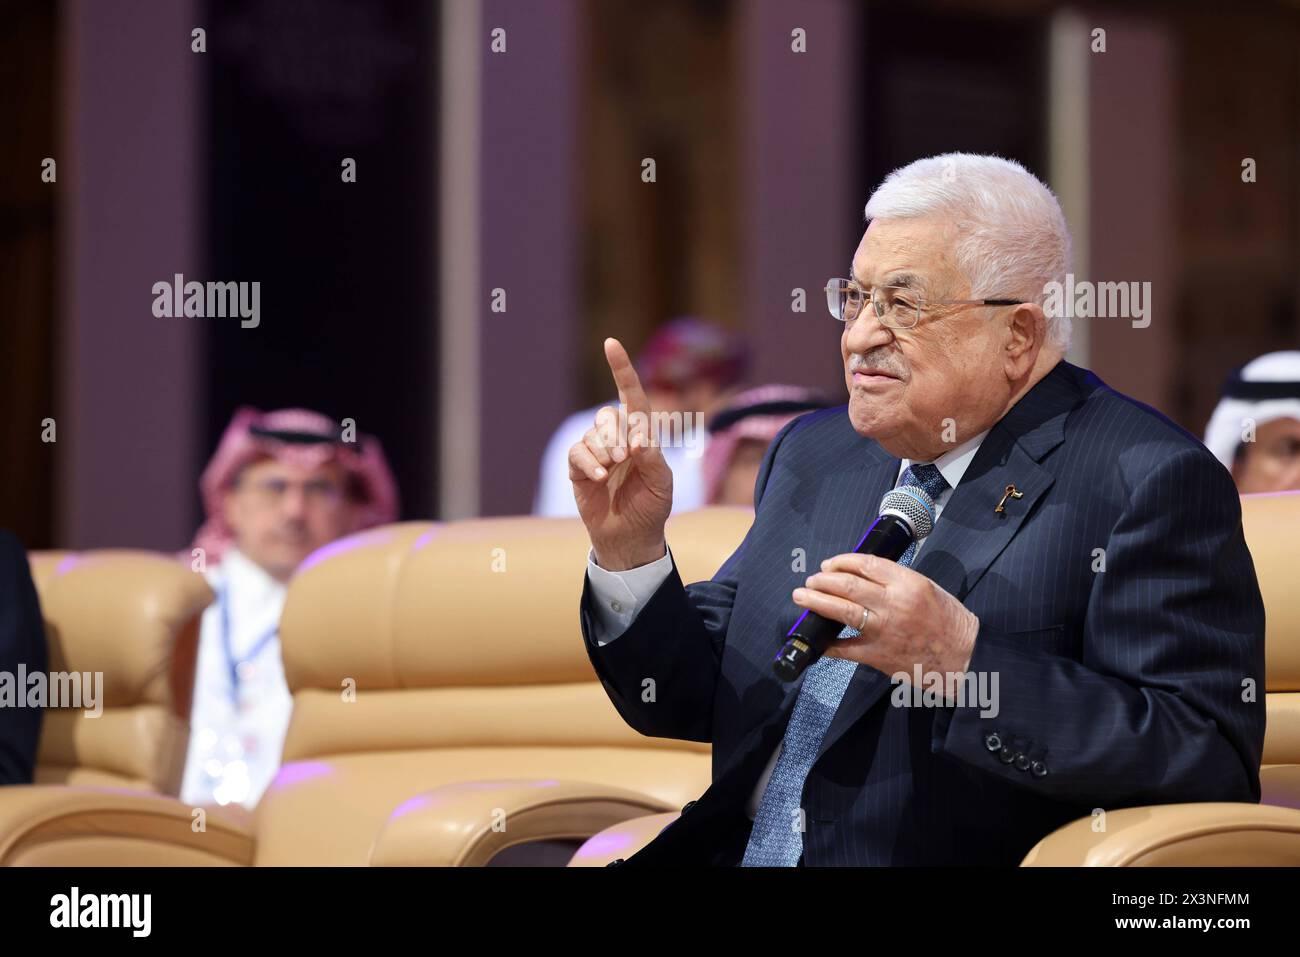 Le président palestinien Mahmoud Abbas Abu Mazen lors de sa participation au Forum économique mondial à Riyad, Royaume d'Arabie saoudite, le 28 avril 2024. Photo de Thaer Ganaim apaimages Riyad Riyad Arabie Saoudite 280424 Riyad PPO 003 Copyright : xapaimagesxThaerxGanaimxxapaimagesx Banque D'Images